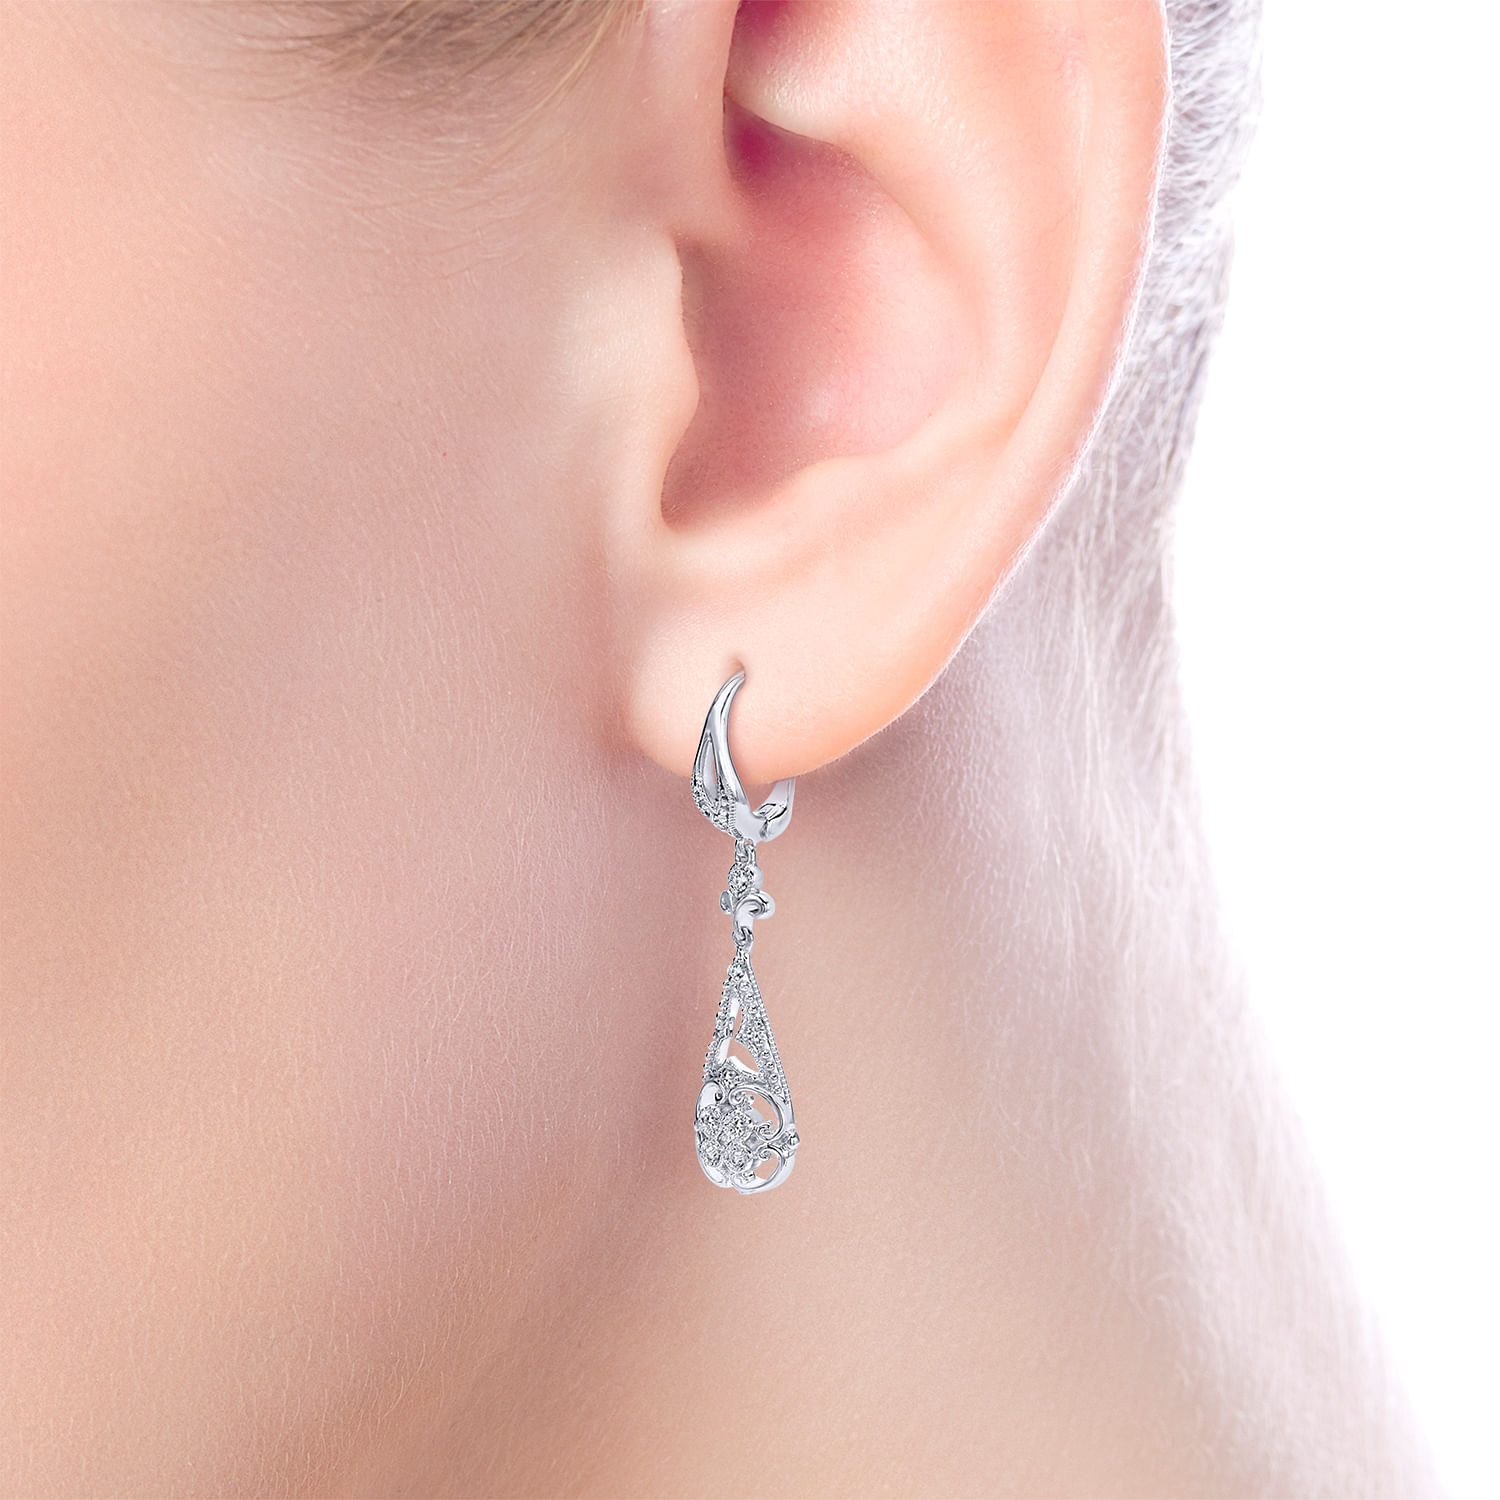 Vintage Inspired 14K White Gold Teardrop Cutout Diamond Drop Earrings